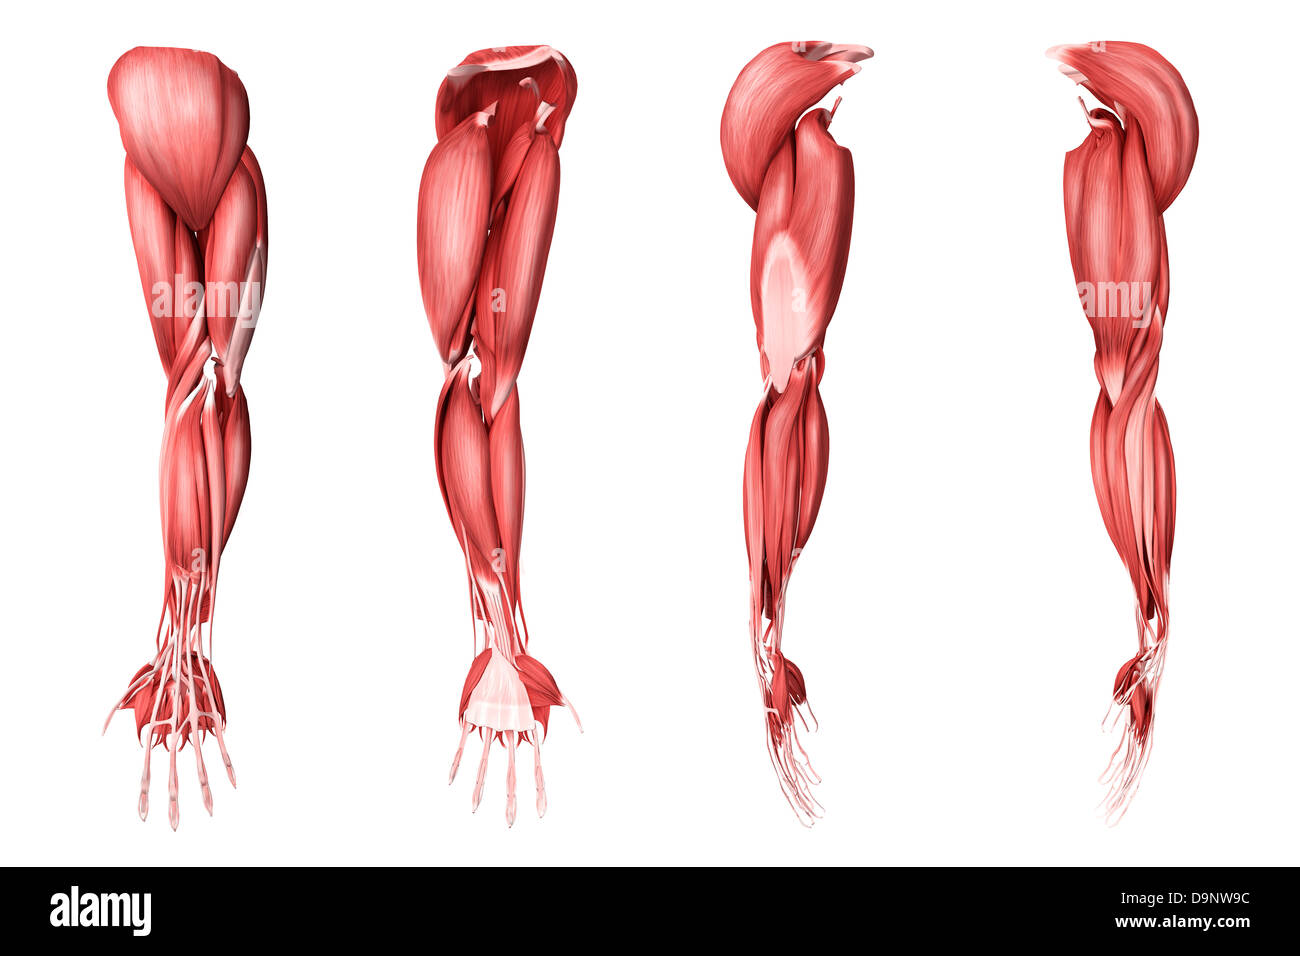 Medizinische Illustration der menschlichen Armmuskeln, vier Seitenansichten. Stockfoto